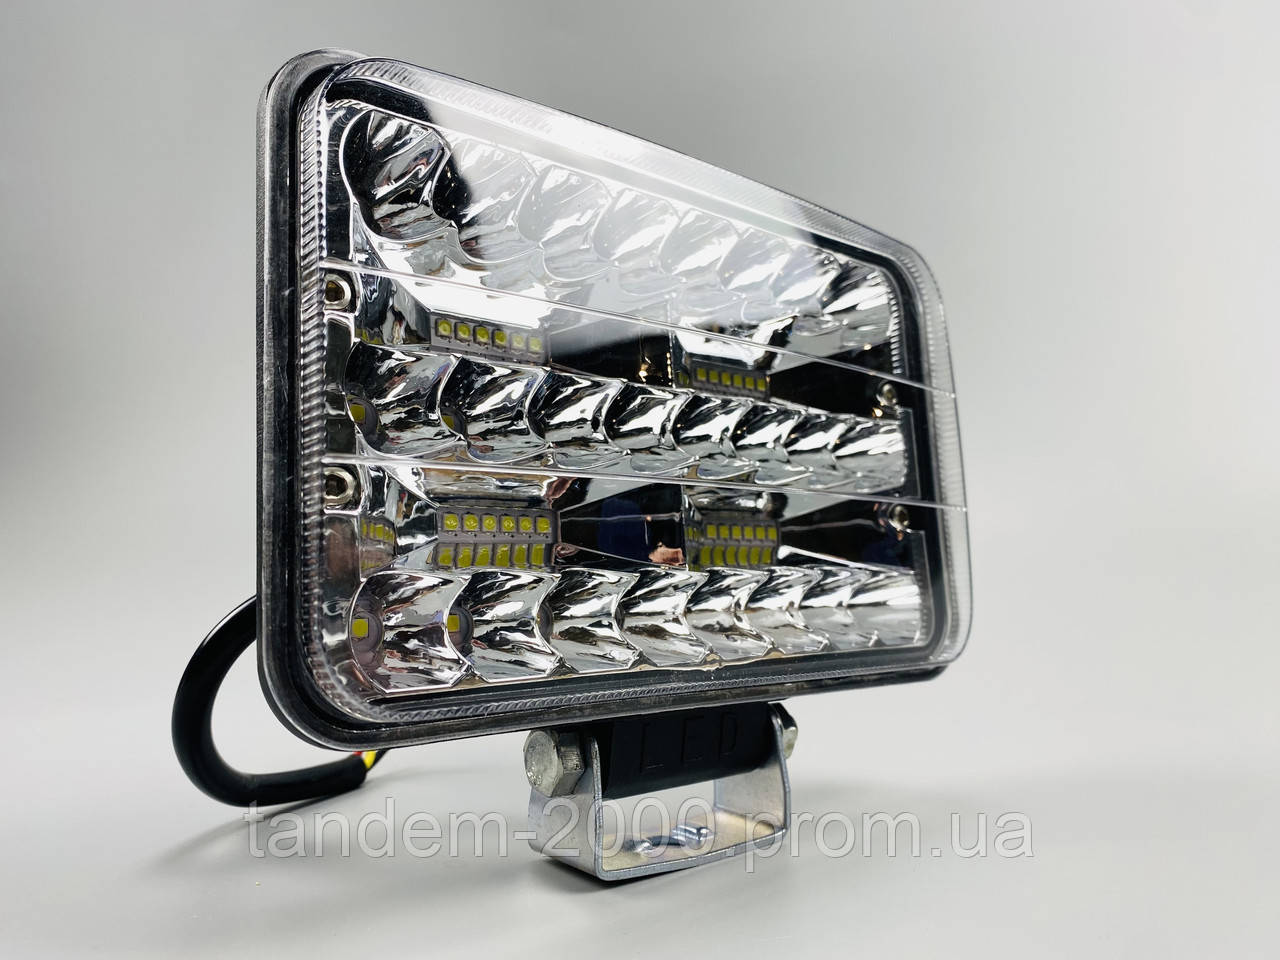 Прямокутна LED фара 144 Вт 48 світлодіодів з чіпами 3030, ближнє + дальнє автомобільне світло